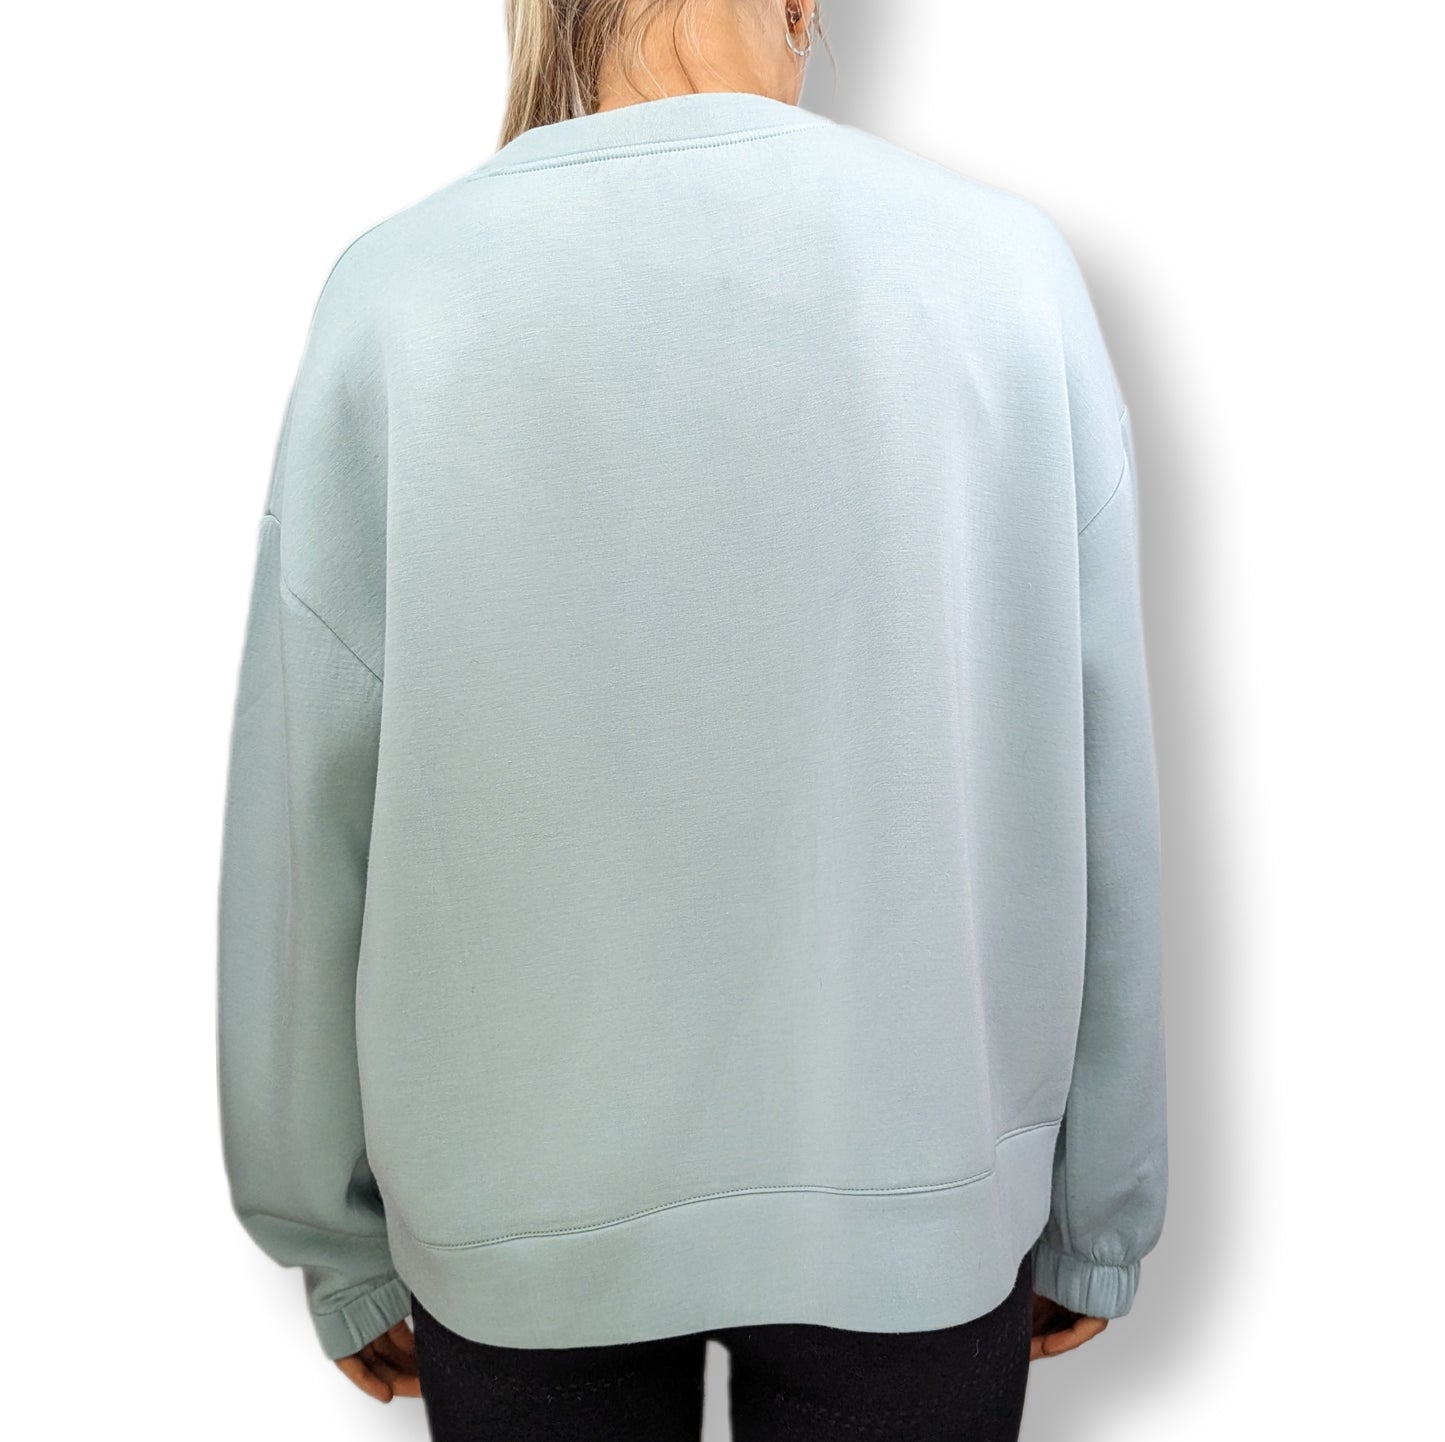 Helen Steele Blue Loose Fit Sweatshirt Women Size Medium